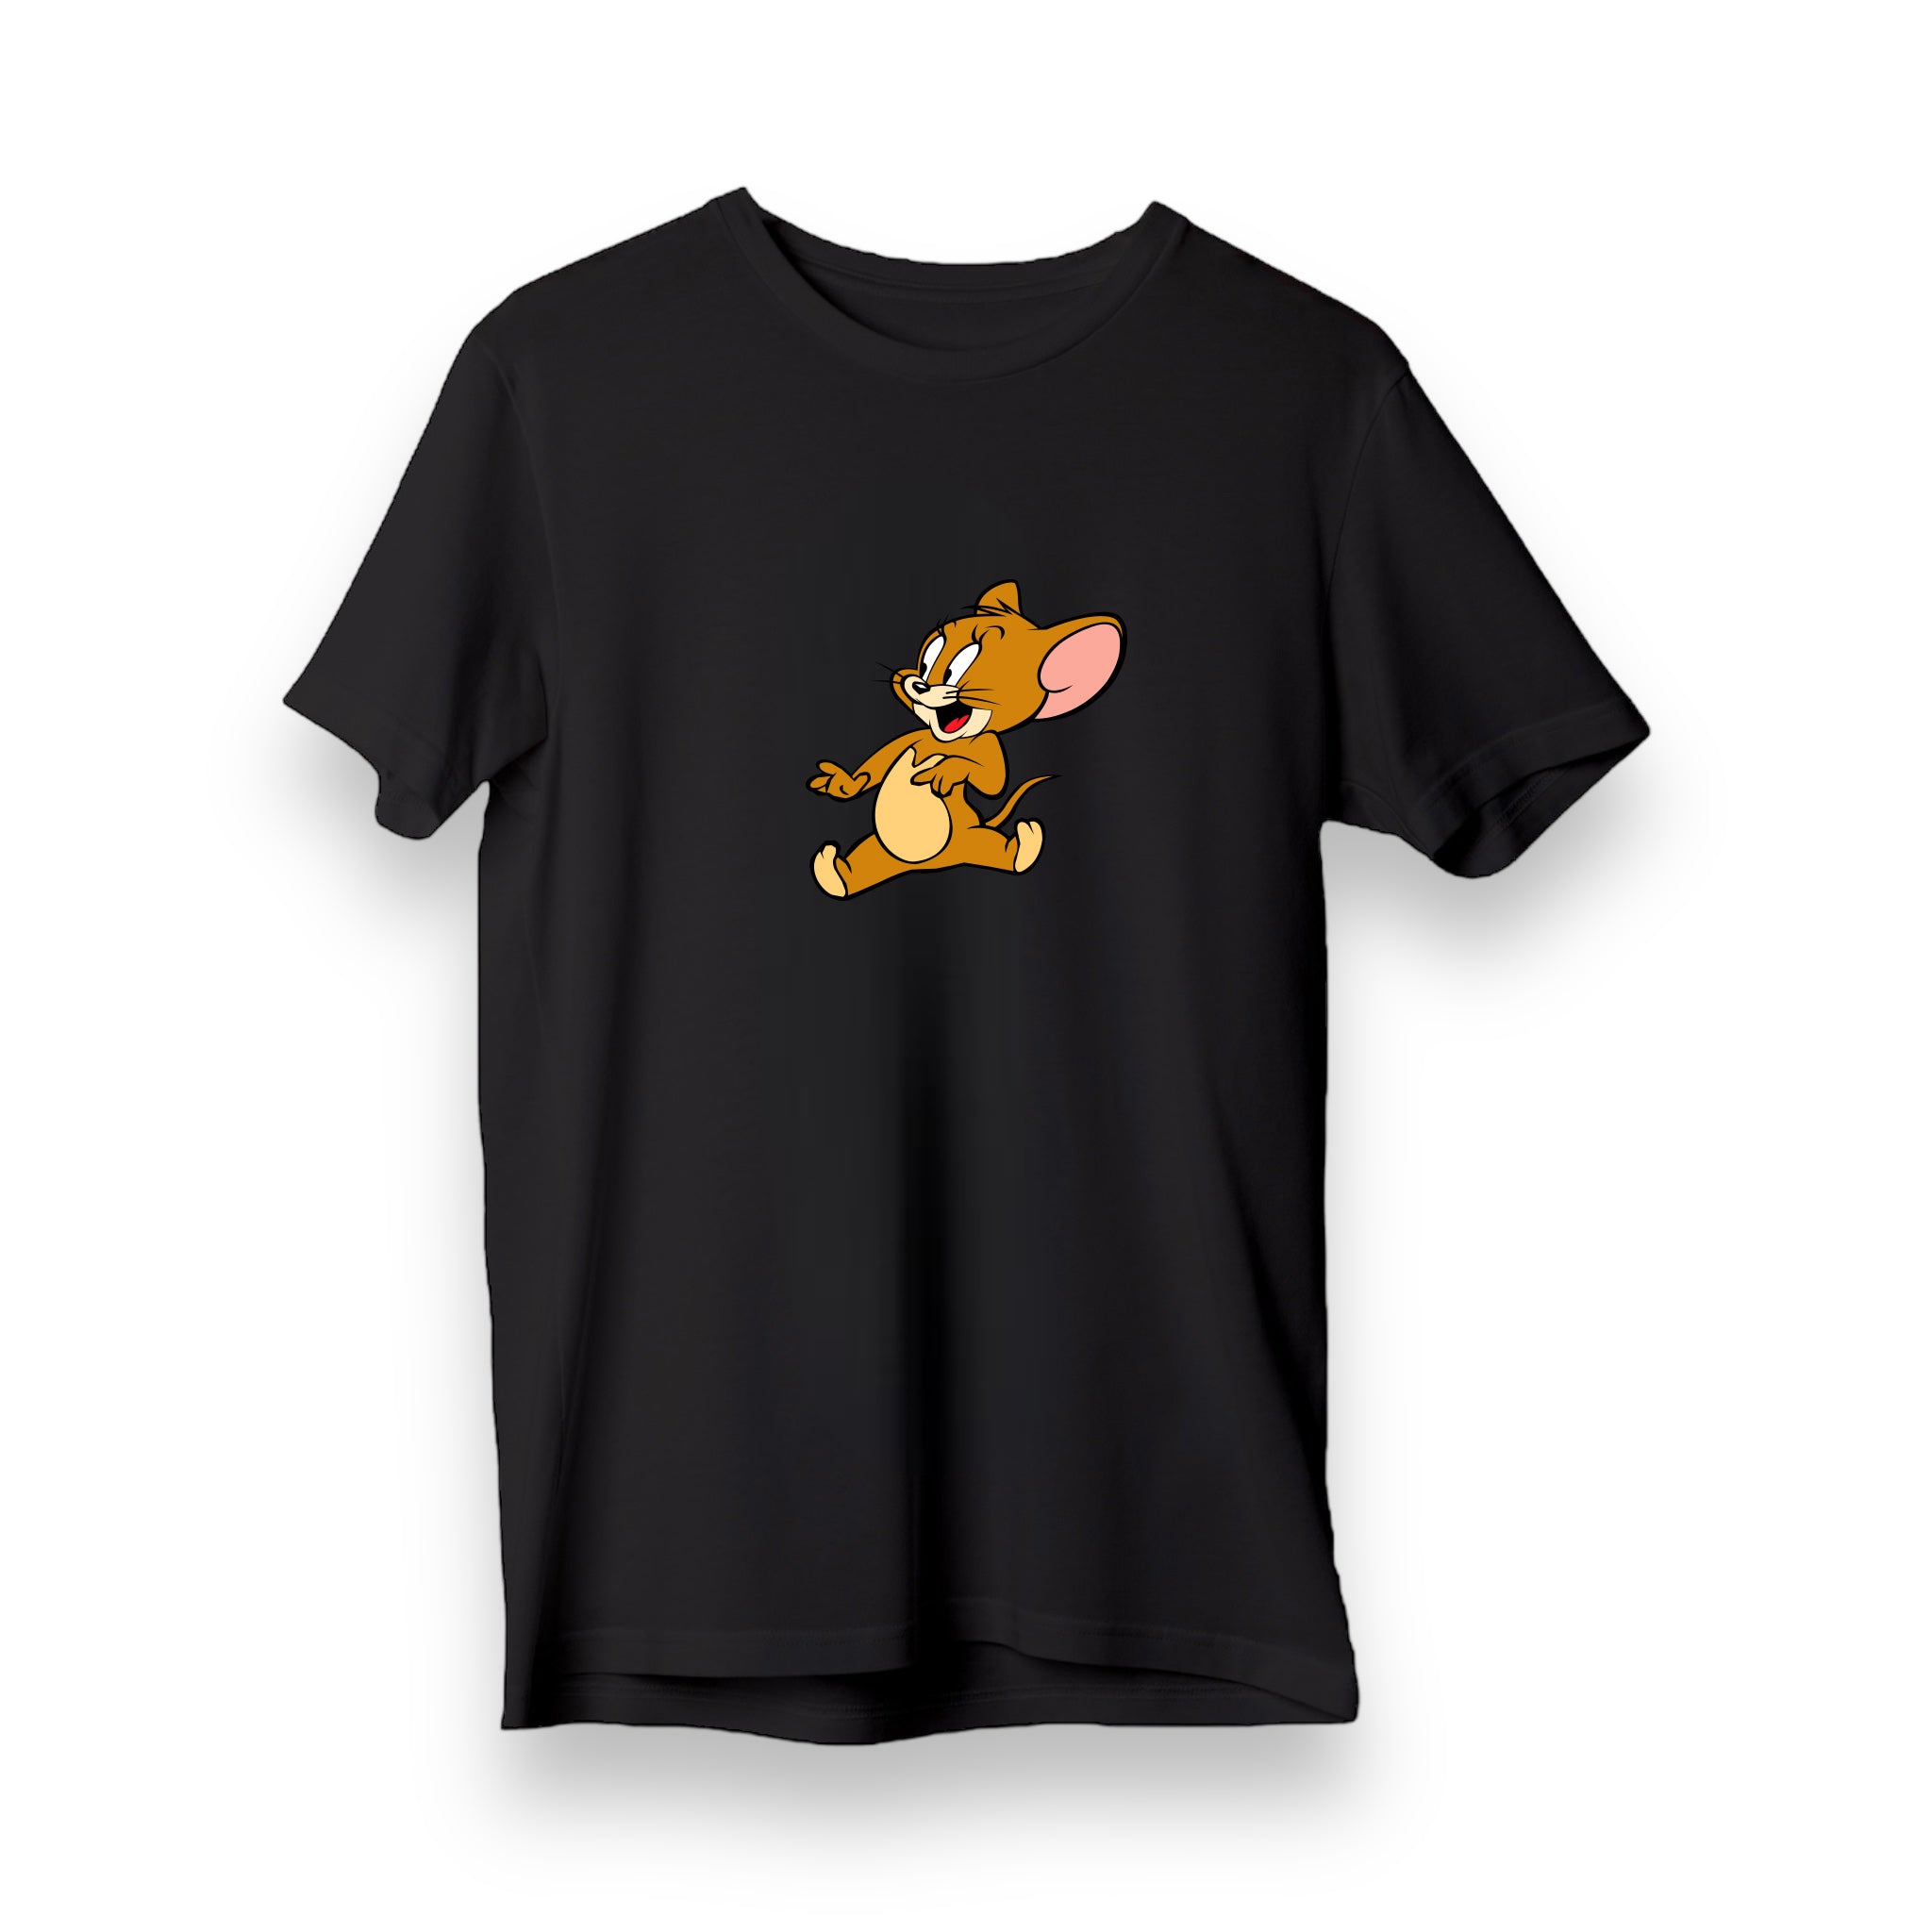 Jerry - Regular T-Shirt